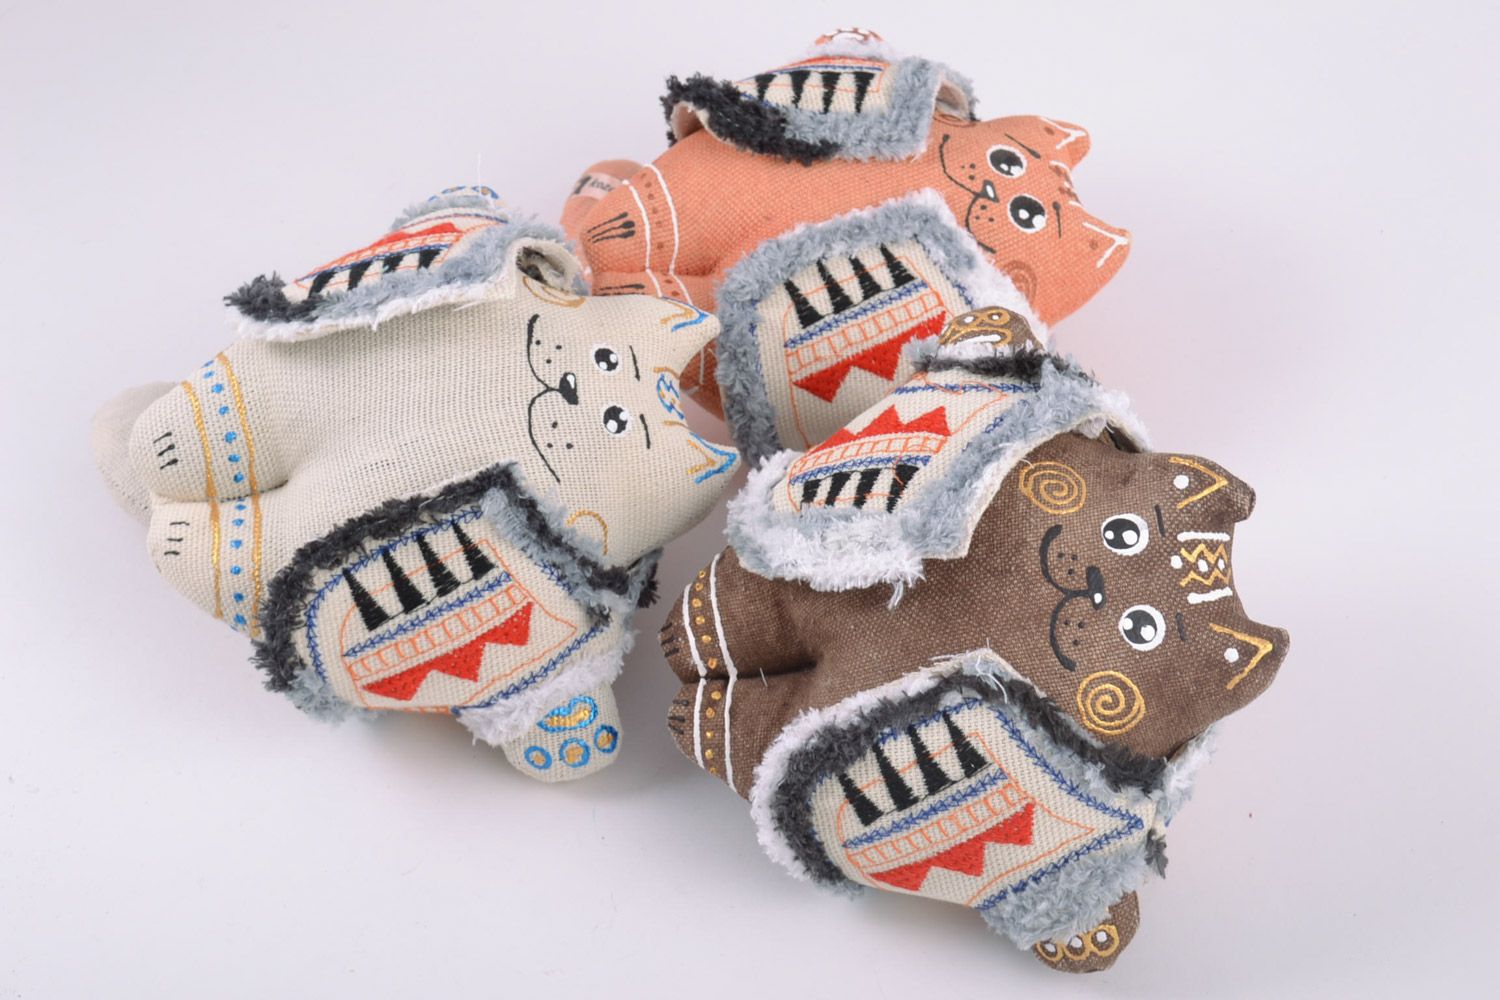 Petites peluches décoratives en tissu peintes faites main 3 chats en gilets photo 2